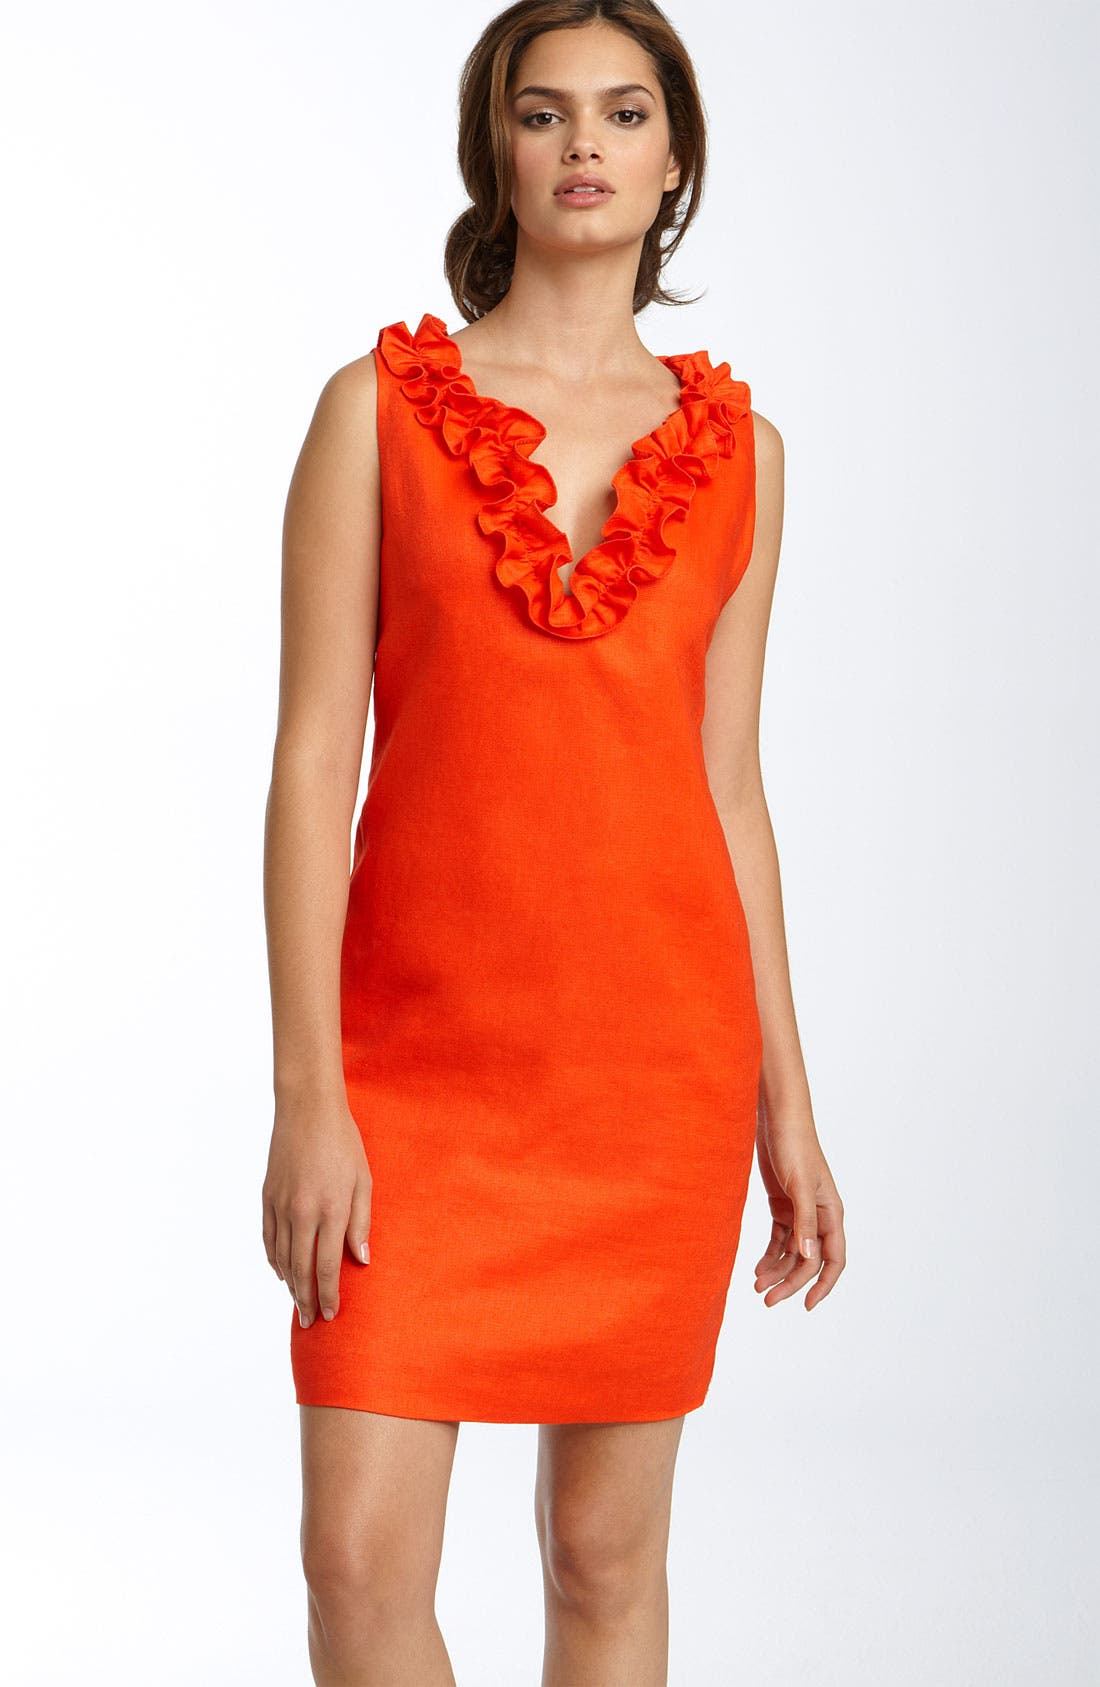 kate spade orange dress